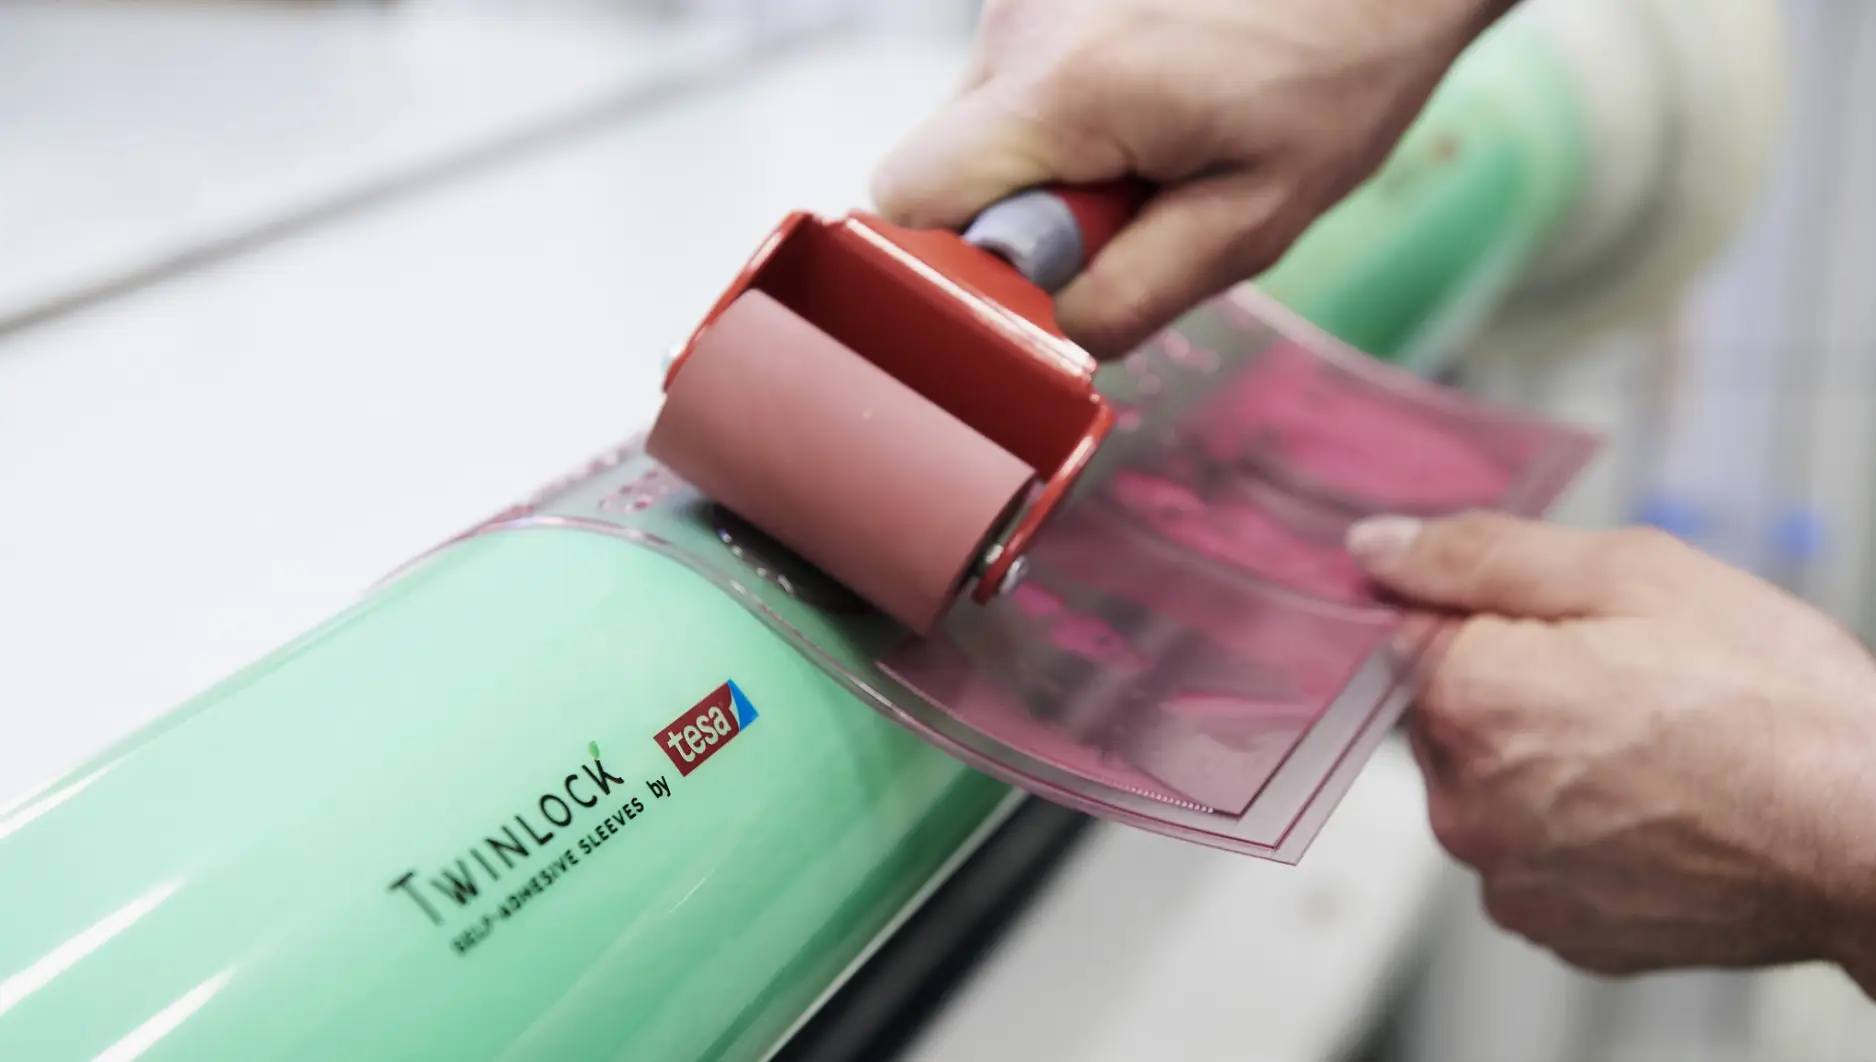 Print & Paper: O conceito único da tesa® Twinlock oferece uma solução sustentável e reutilizável para o setor de impressão flexográfica. Esse processo é usado, entre outras coisas, para imprimir embalagens de alimentos.